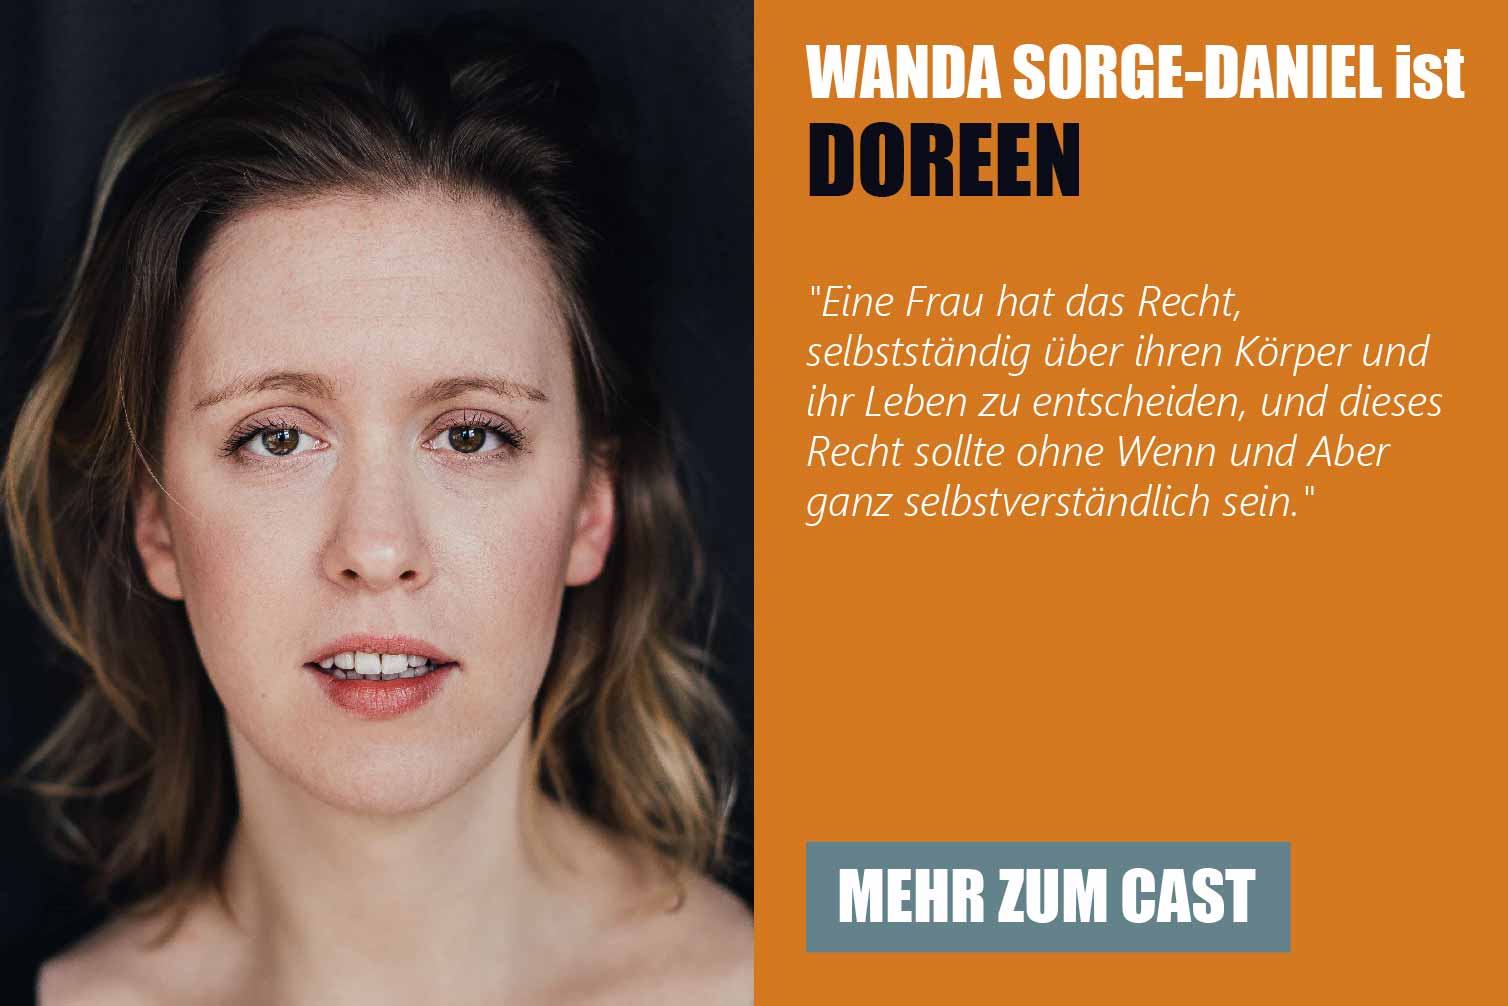 Die Schauspielerin Wanda Sorge-Daniel ist Doreen